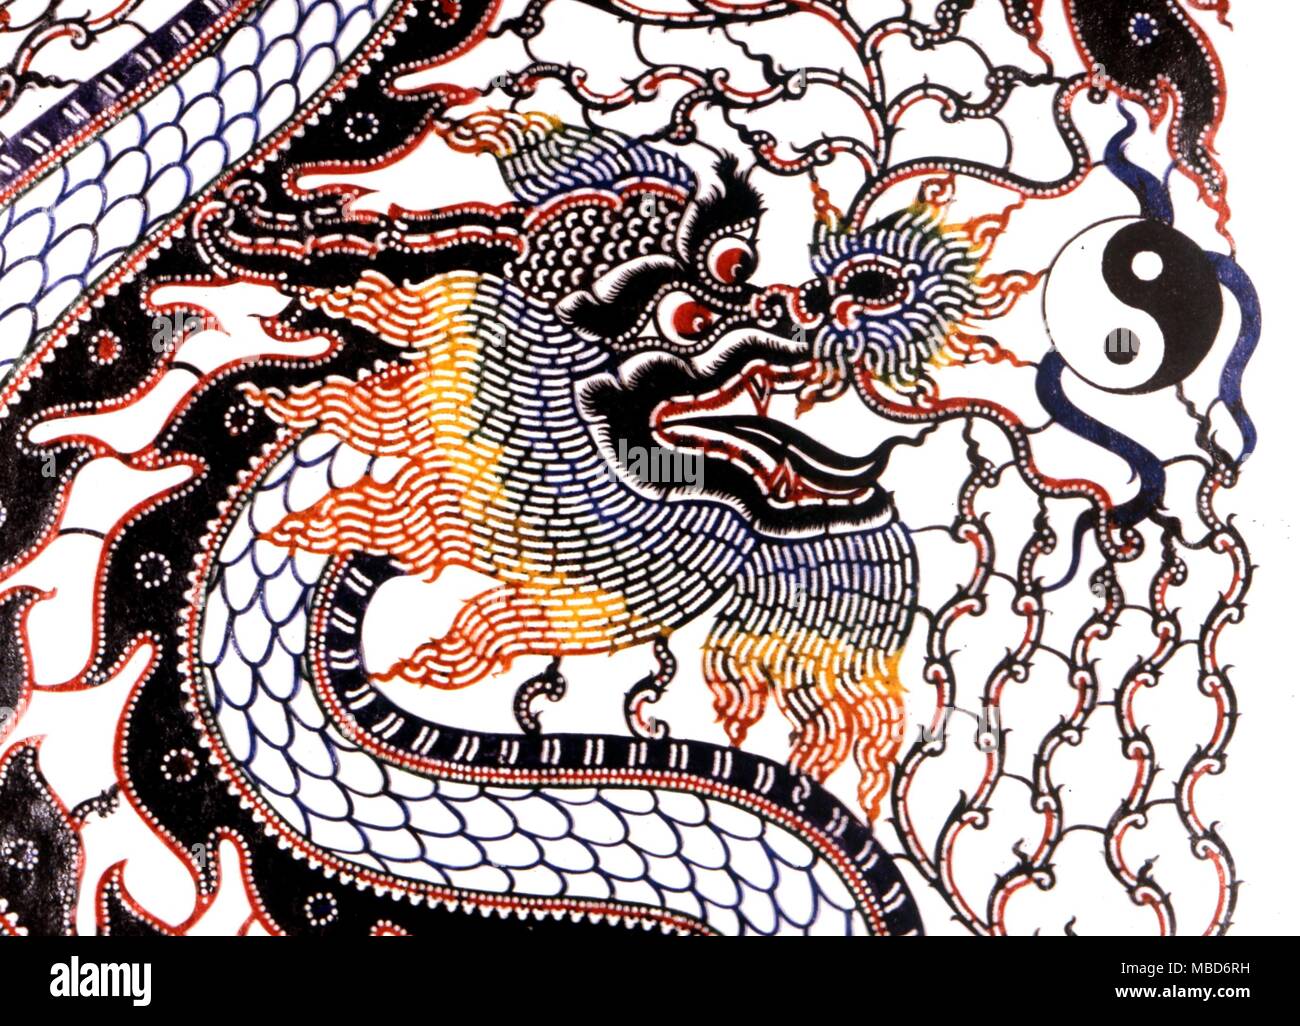 Drago - Il Tai Chi simbolo, talvolta chiamato Ying-Yang simbolo, come parte di un drago orientale dell'immagine. Il Ying Yang opposizione è la base della teoria sottostante la I Ching. Foto Stock